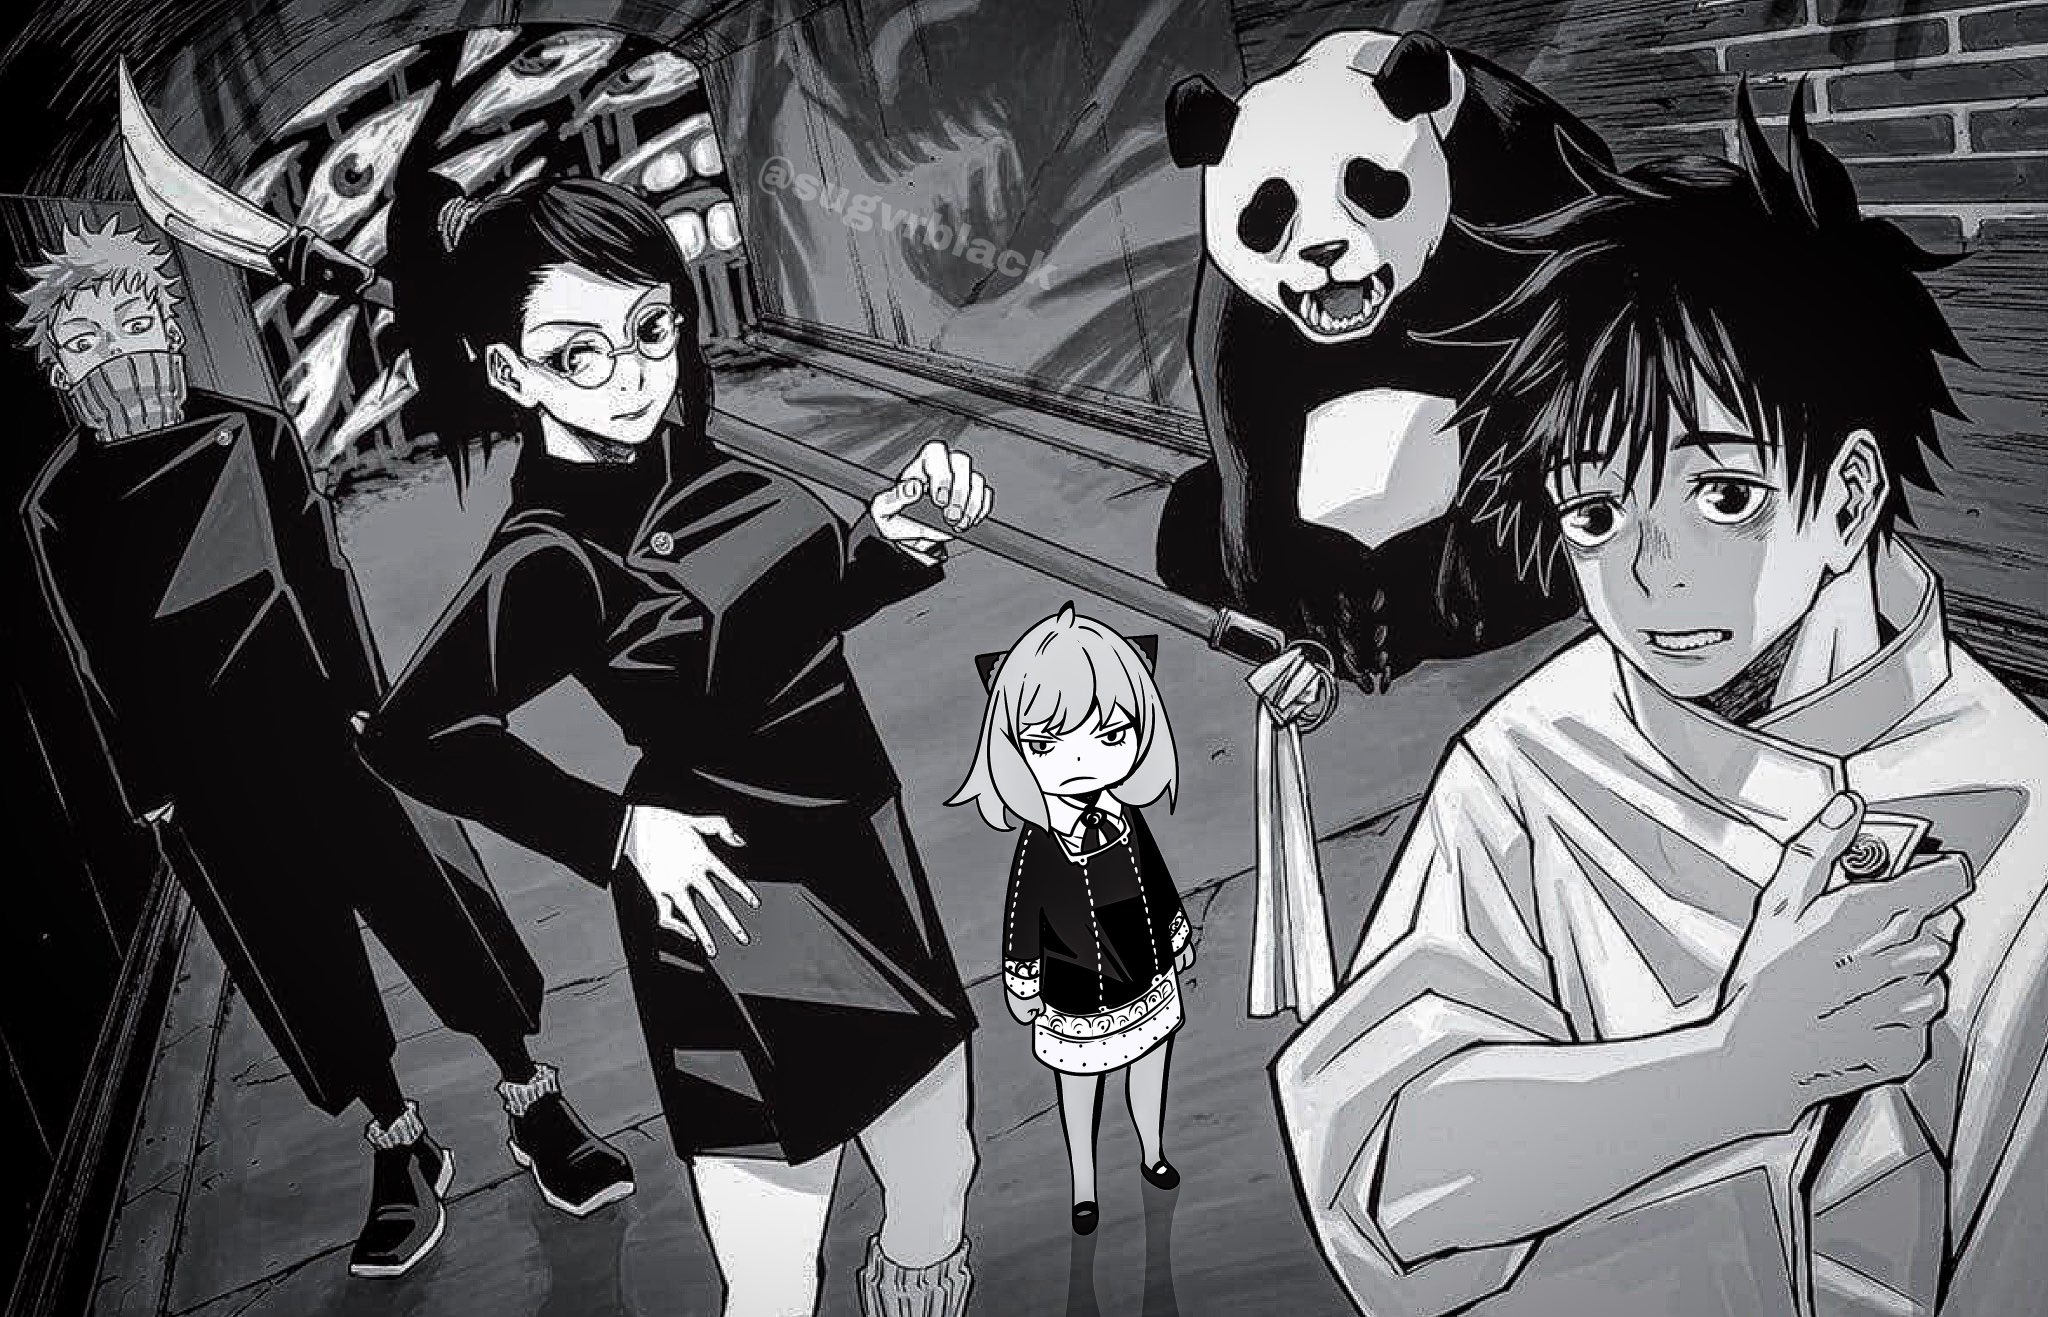 Spy x Family, Jujutsu Kaisen e One Piece recebem tradução em